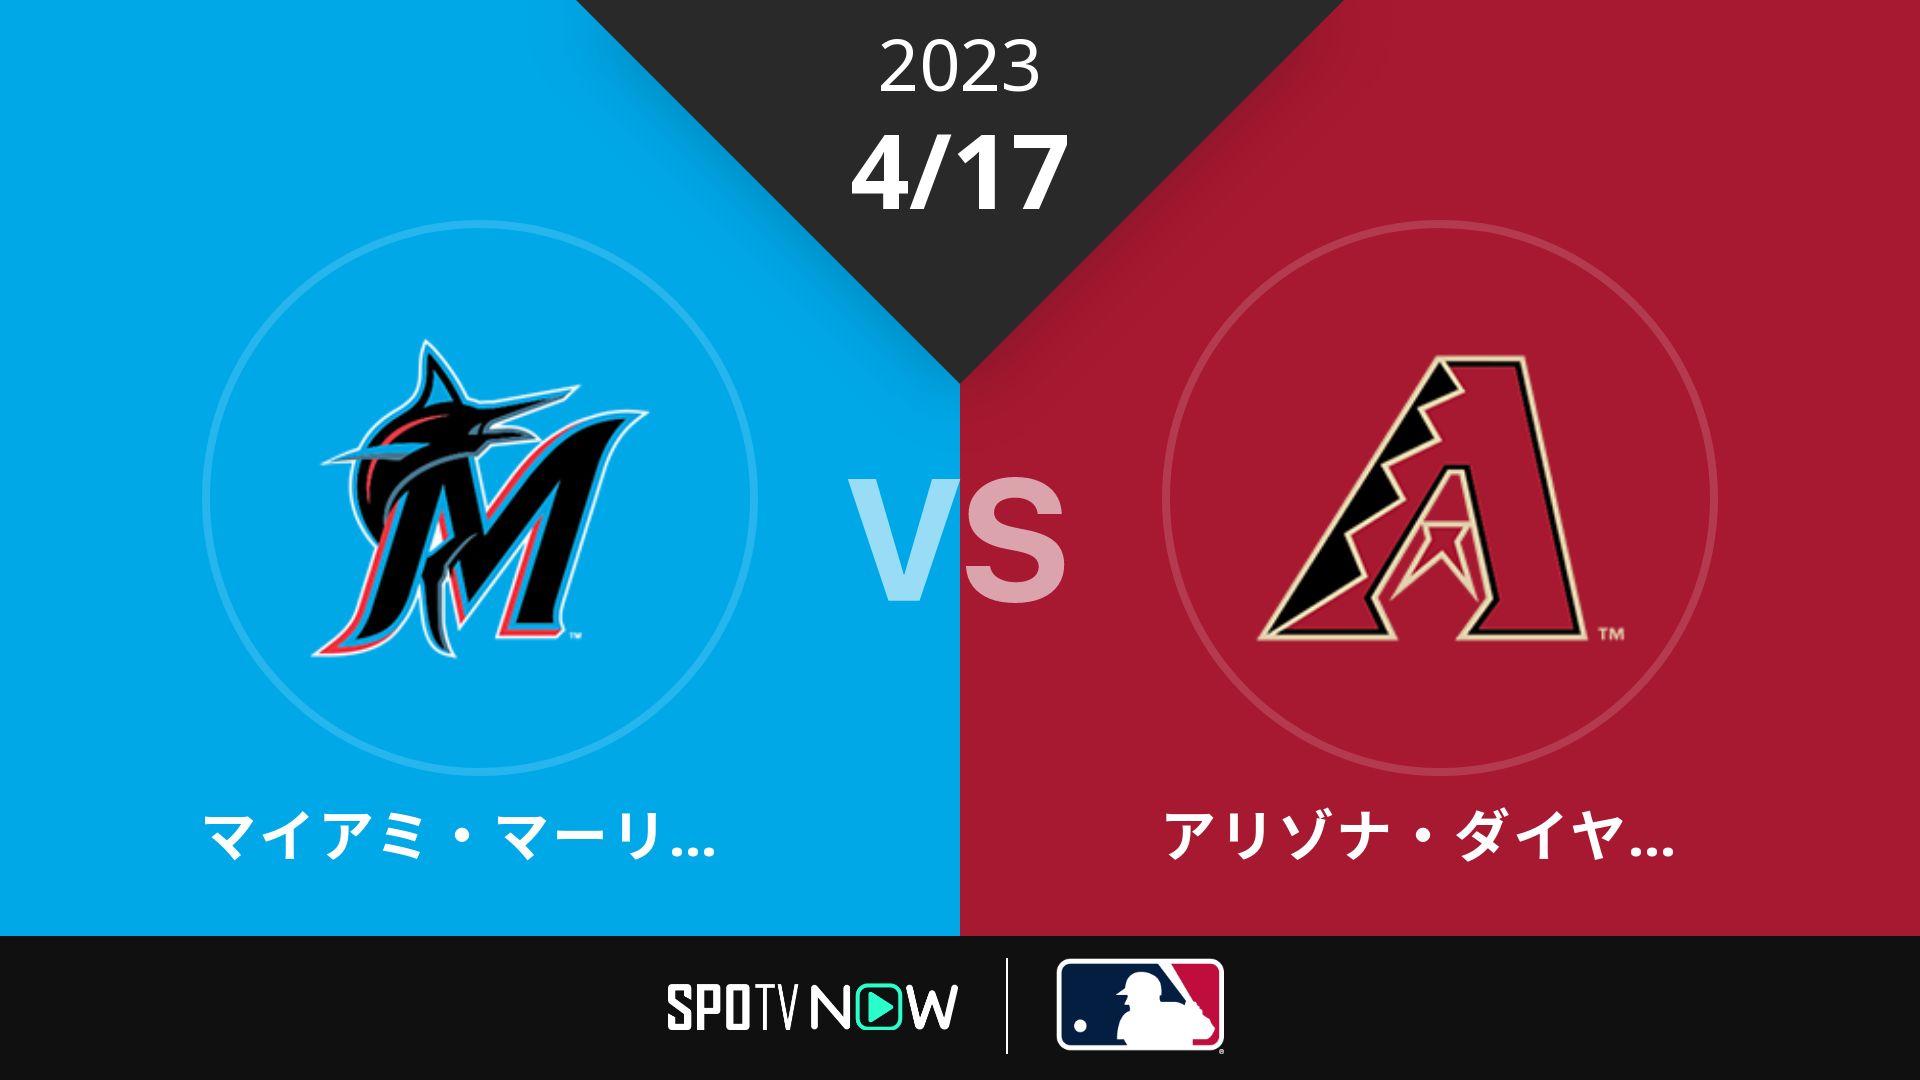 2023/4/17 マーリンズ vs Dバックス [MLB]